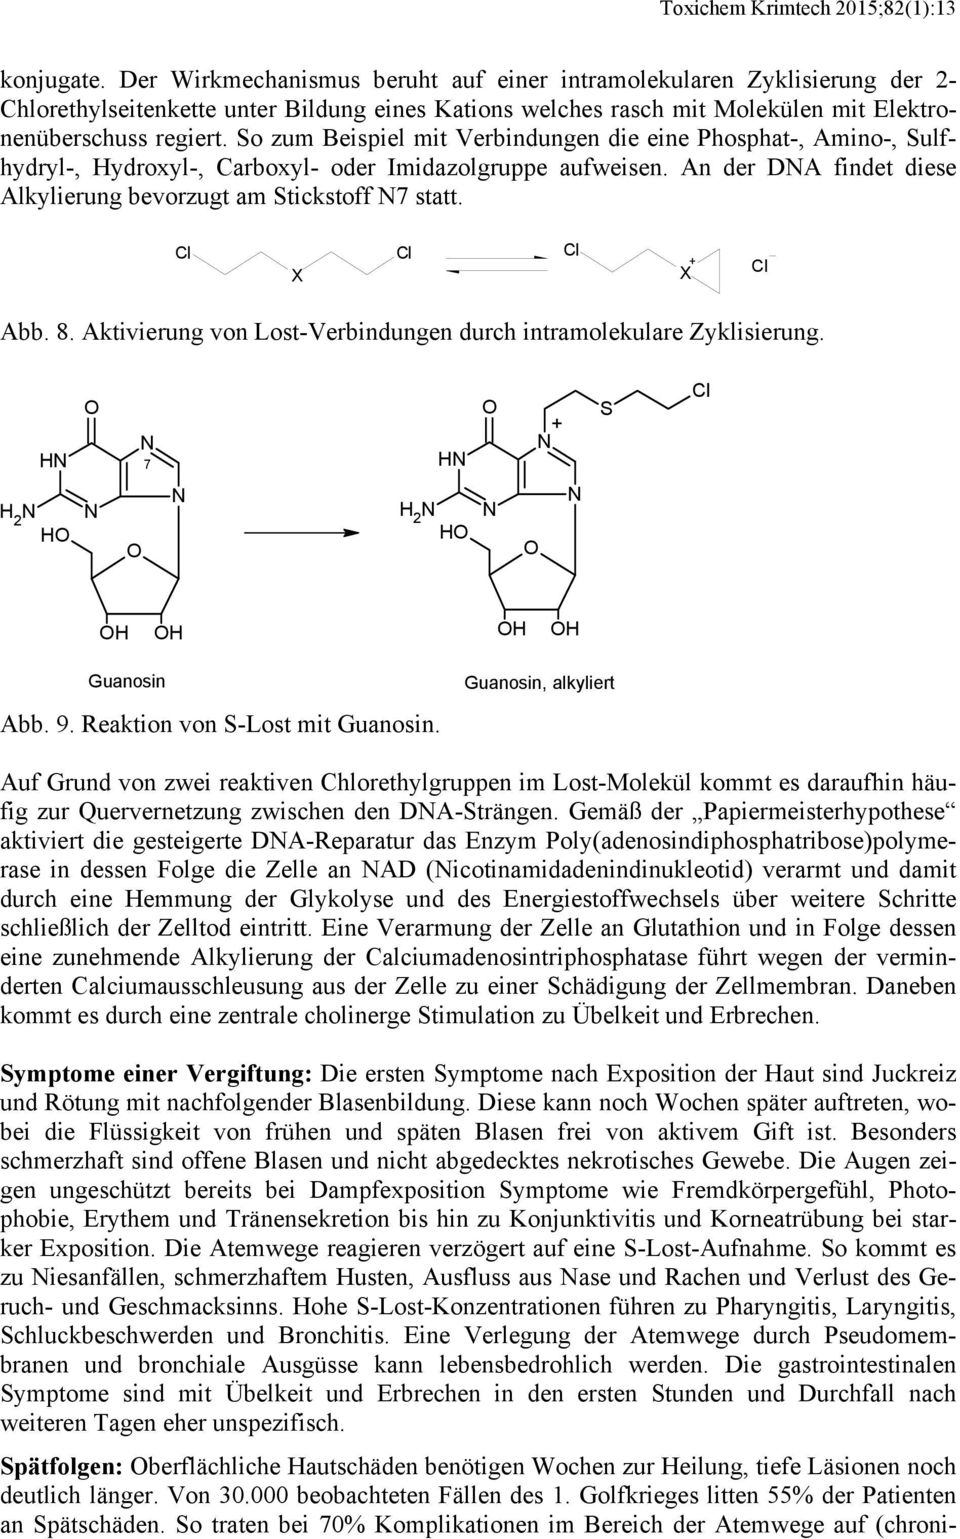 So zum Beispiel mit Verbindungen die eine Phosphat-, Amino-, Sulfhydryl-, Hydroxyl-, Carboxyl- oder Imidazolgruppe aufweisen. An der DA findet diese Alkylierung bevorzugt am Stickstoff 7 statt.